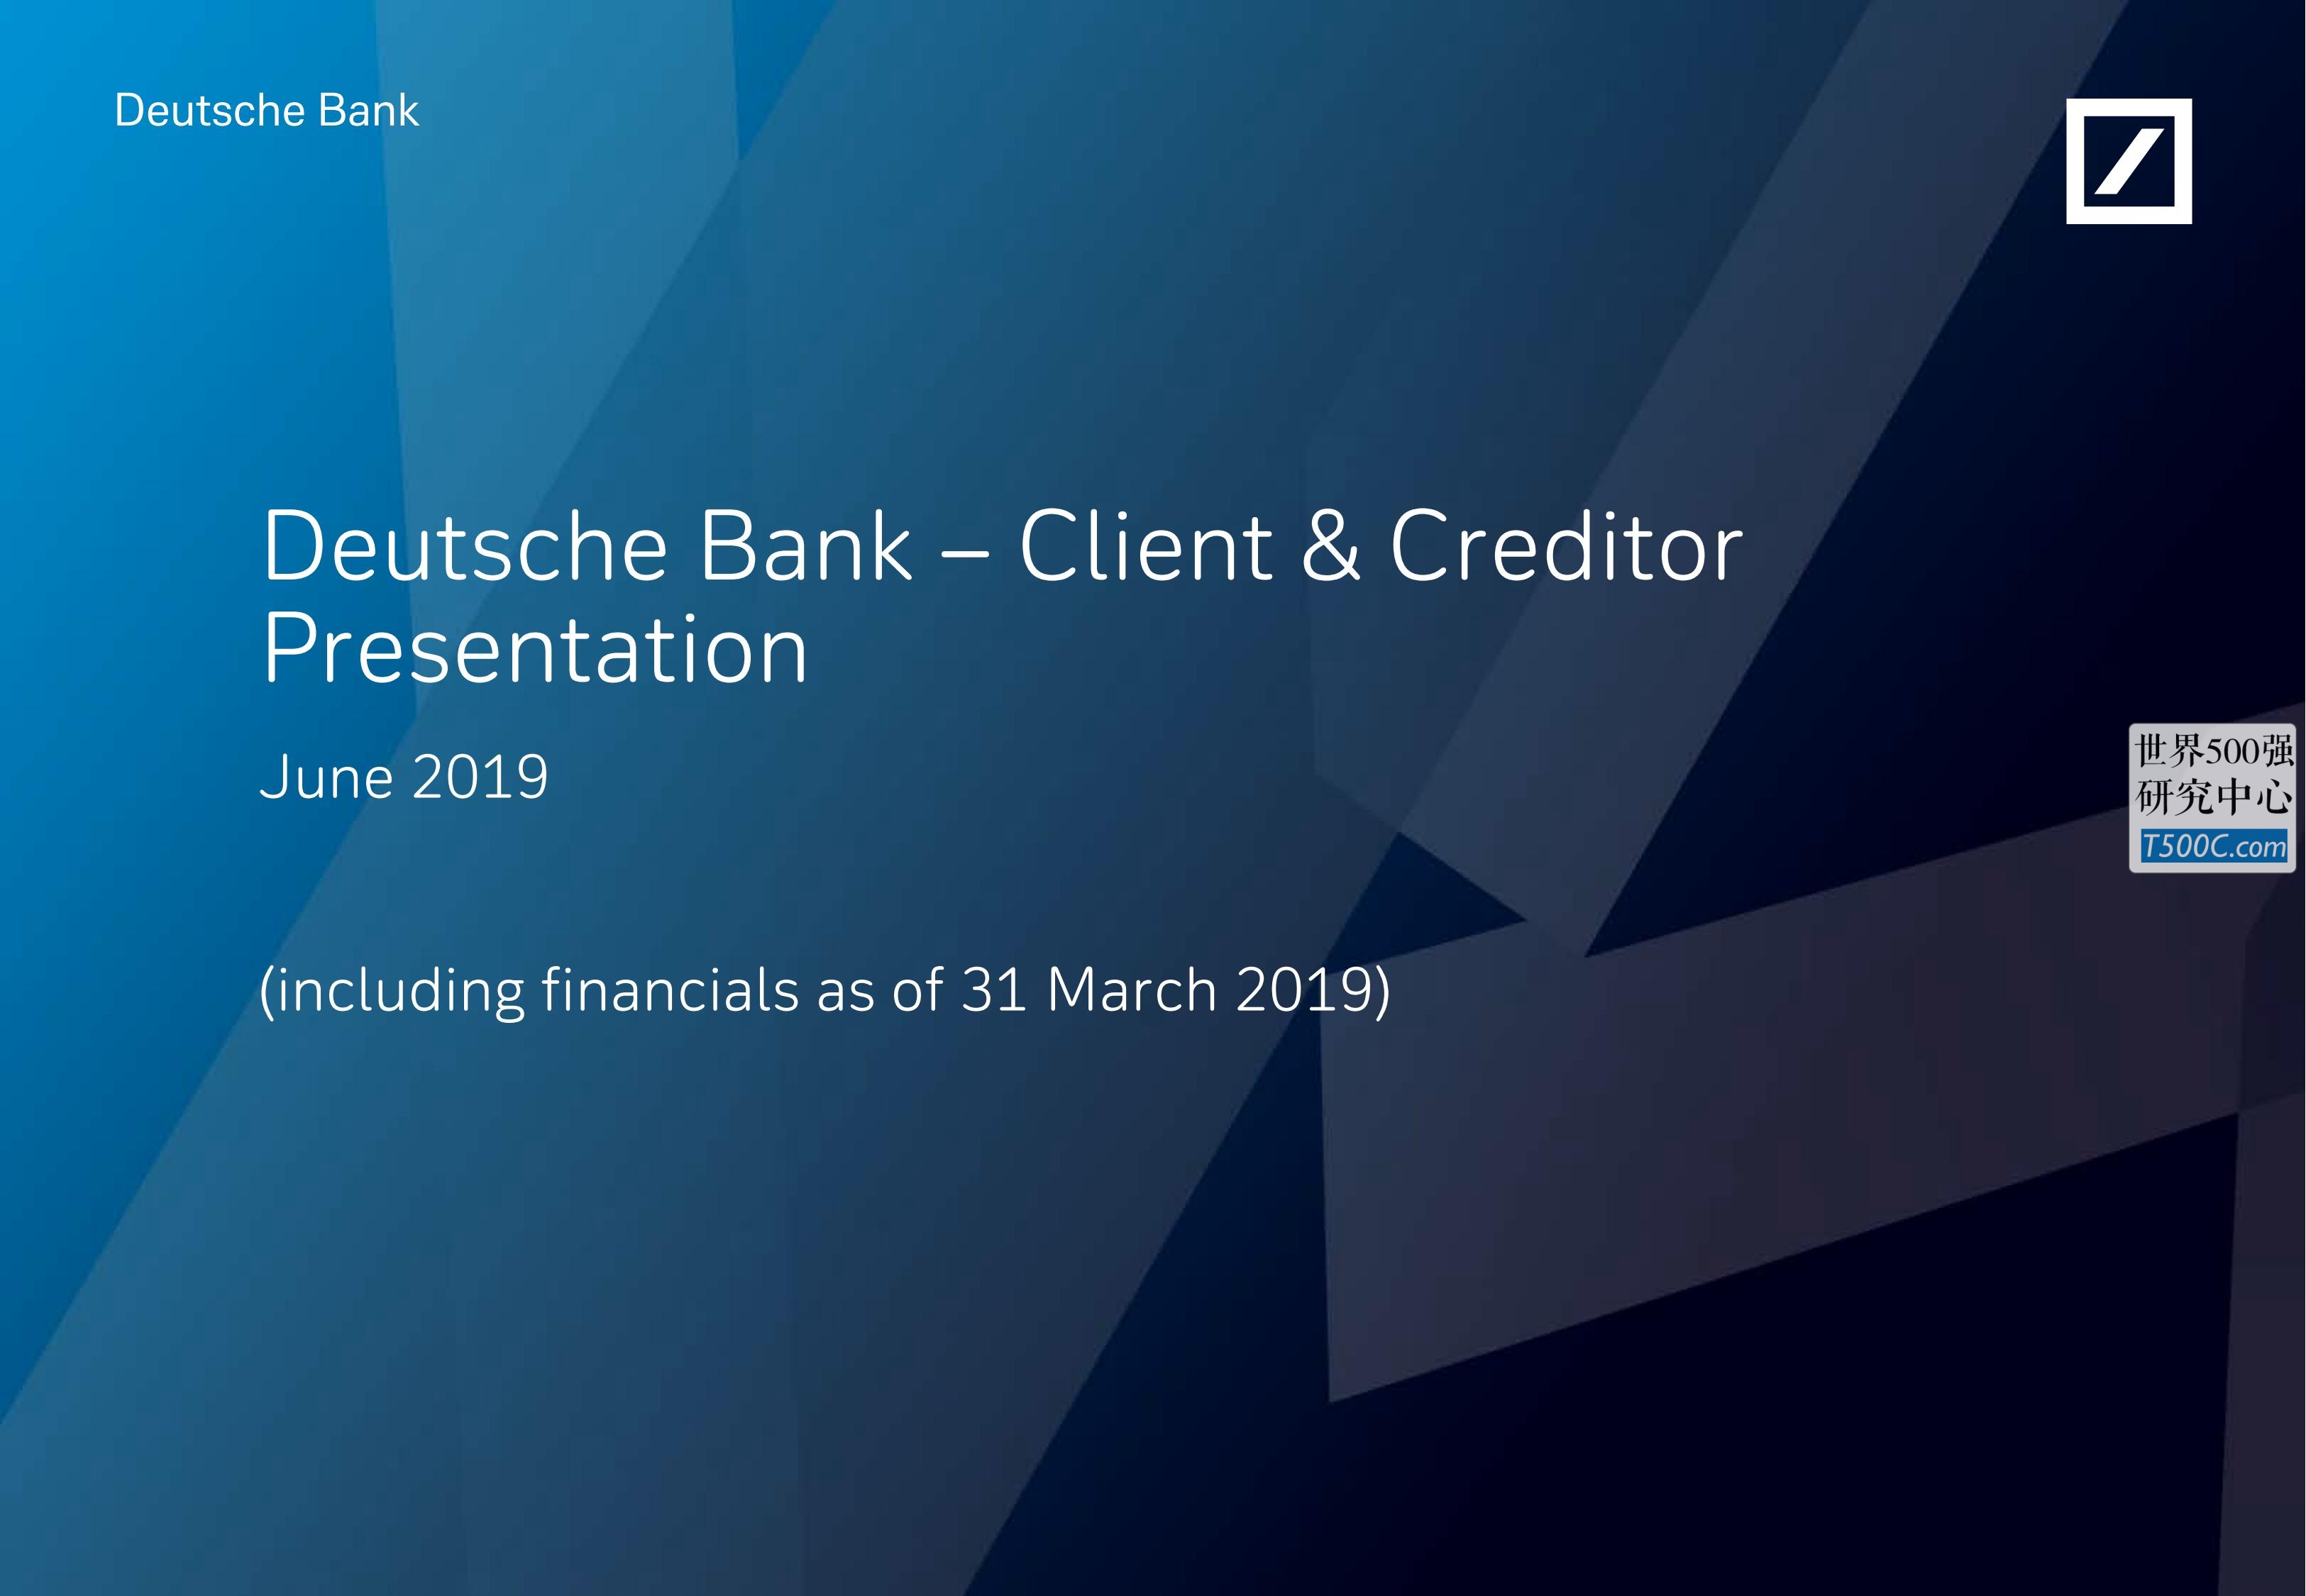 德意志银行DeutscheBank_PPT样式_2019_T500C.com_Client and Creditor Presentation.pdf